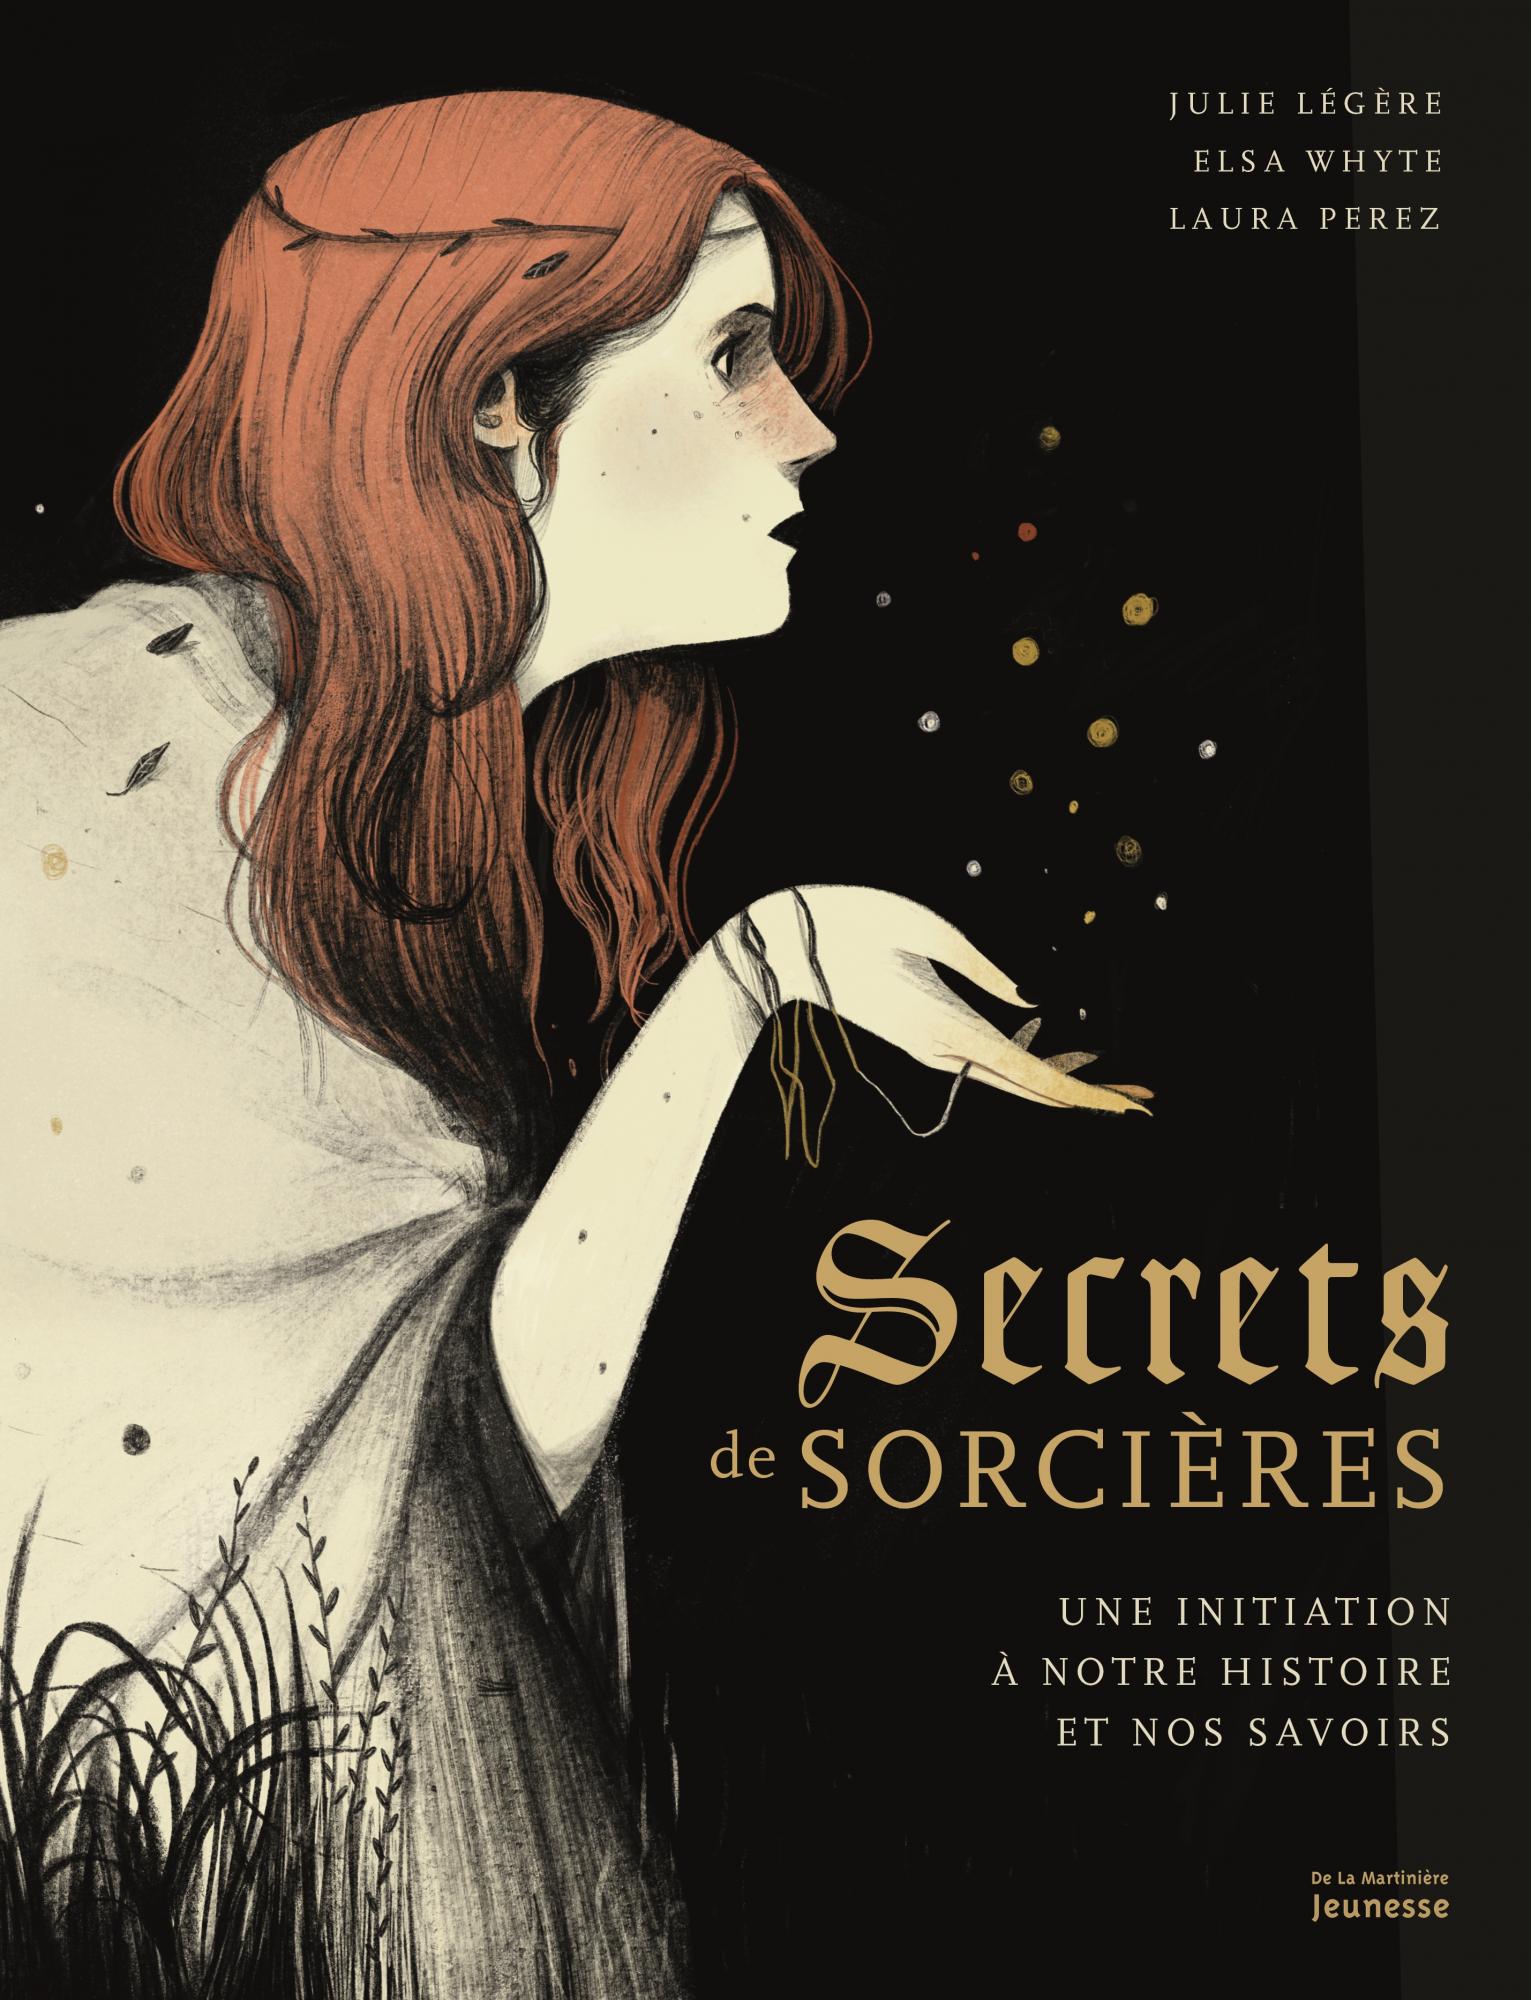 Secrets de sorcières (Français language, La Martinière Jeunesse)